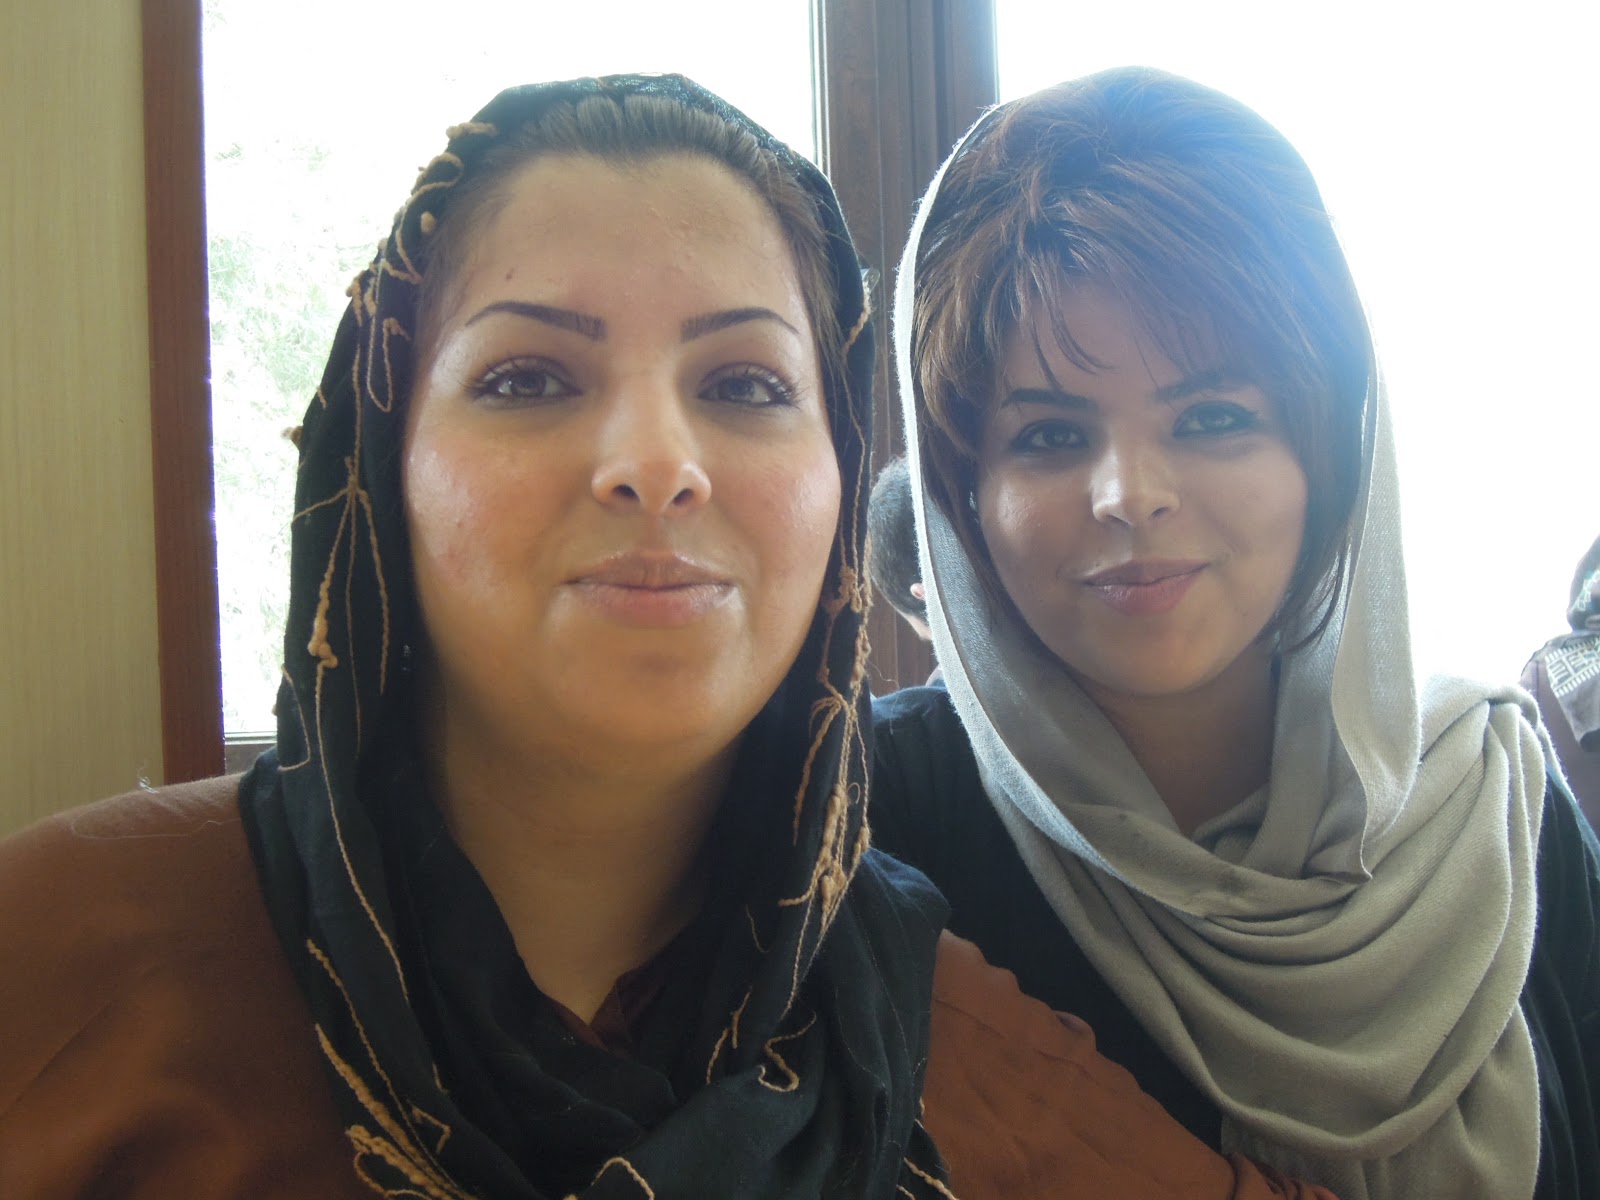 Iran : un site de rencontres pour lutter contre la crise du mariage